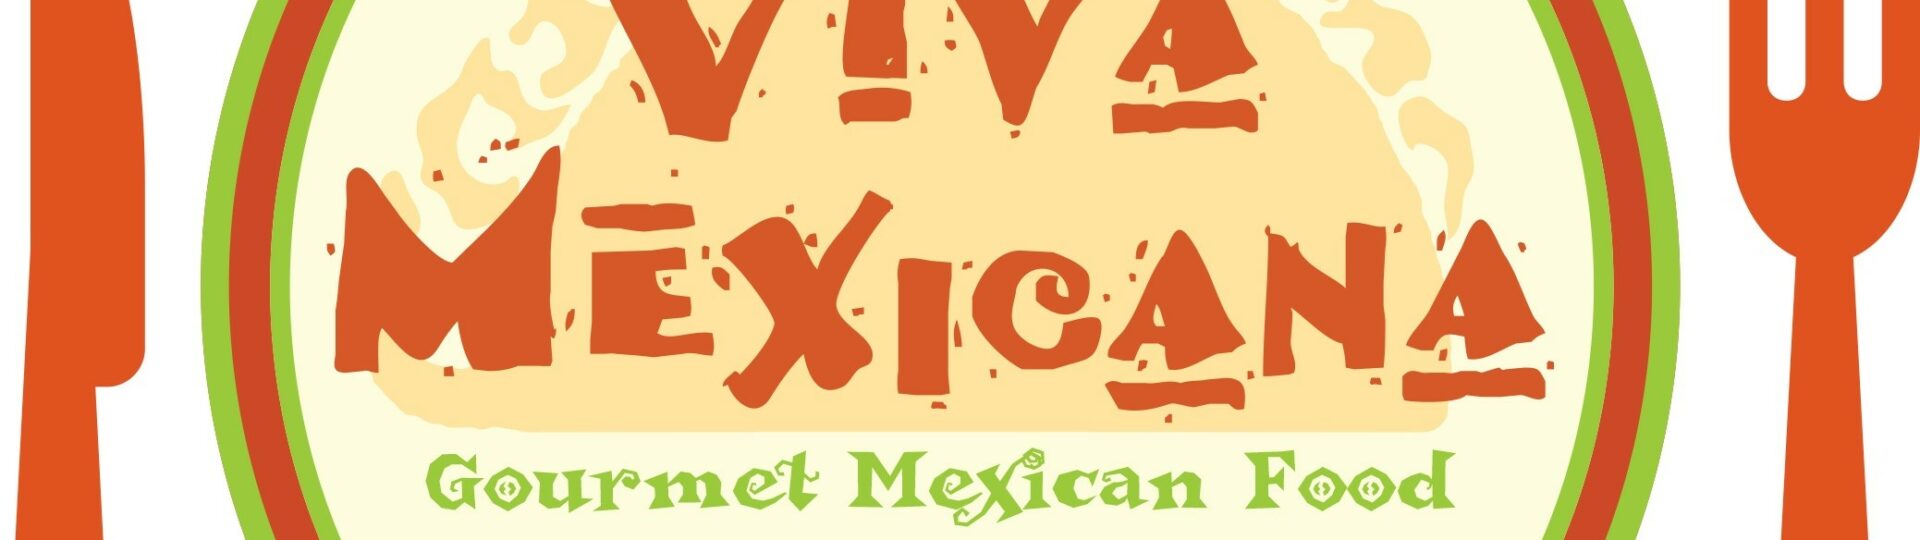 viva mexicana gourmet mexican food. sebastopol, ca est. 1986